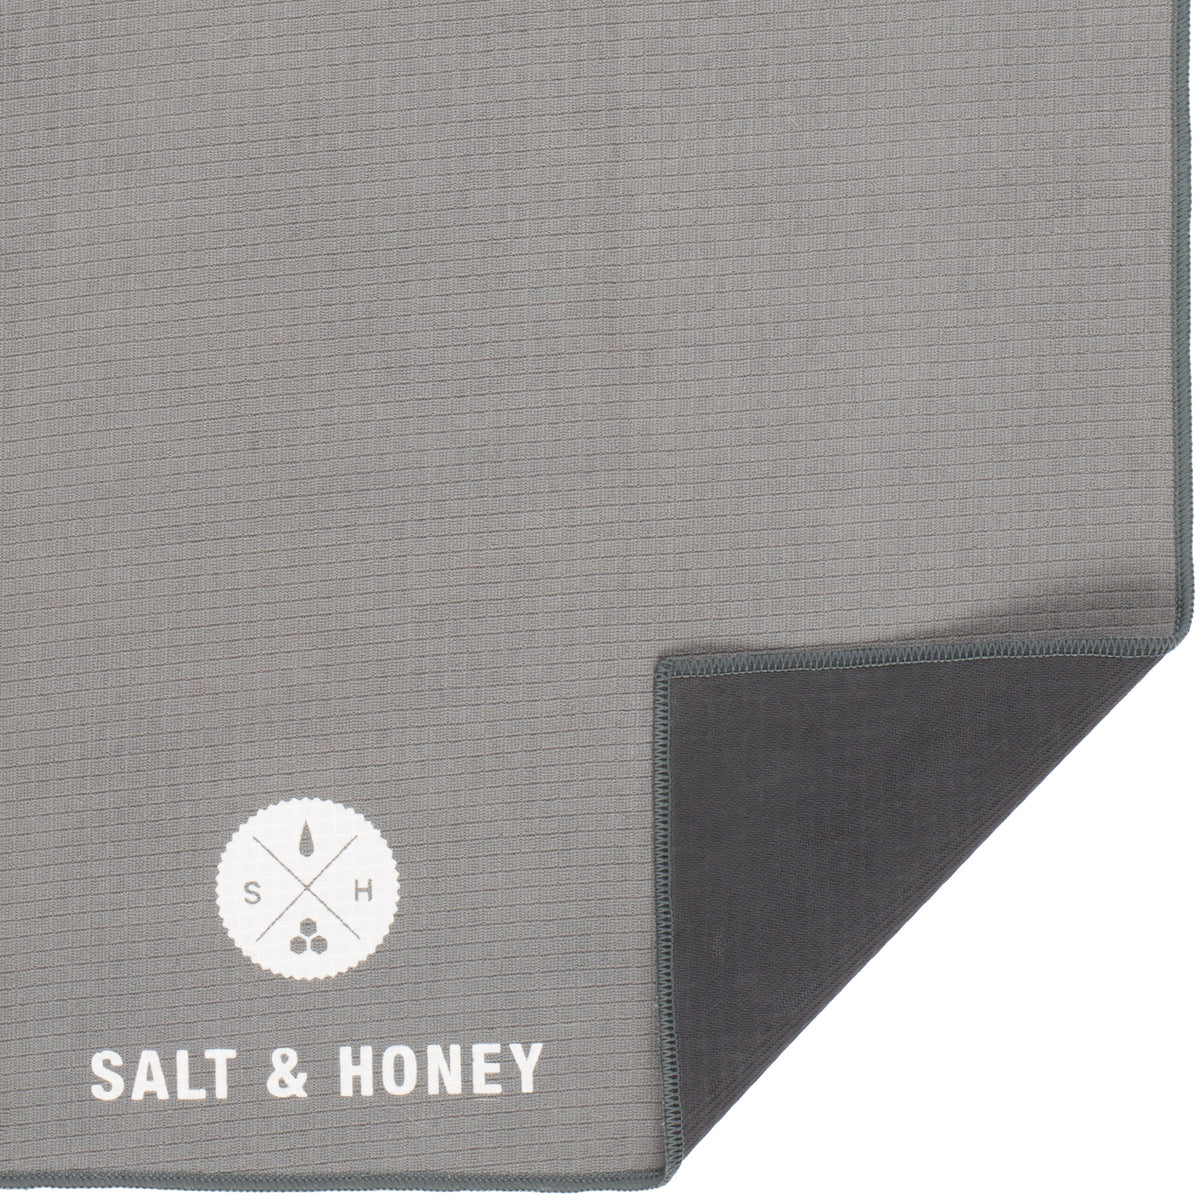 Non-Slip Pilates Reformer Towels by Salt & Honey - Peak Pilates - US/EN